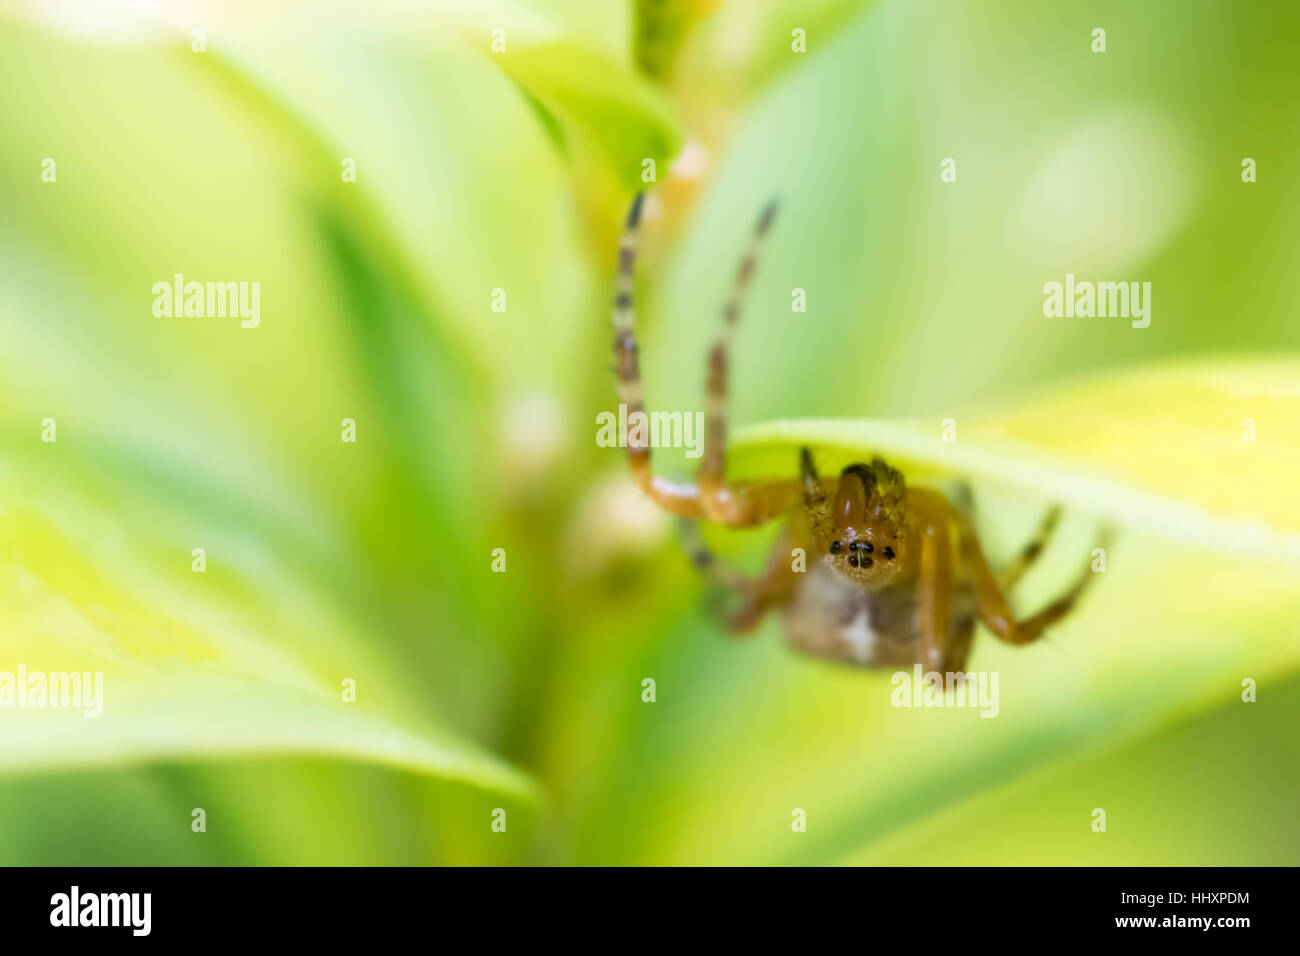 Macro di un individuo giardino europeo spider (Araneus diadematus) capovolto su le foglie verdi di una siepe di bosso impianto. Il Galles, UK. Luglio Foto Stock